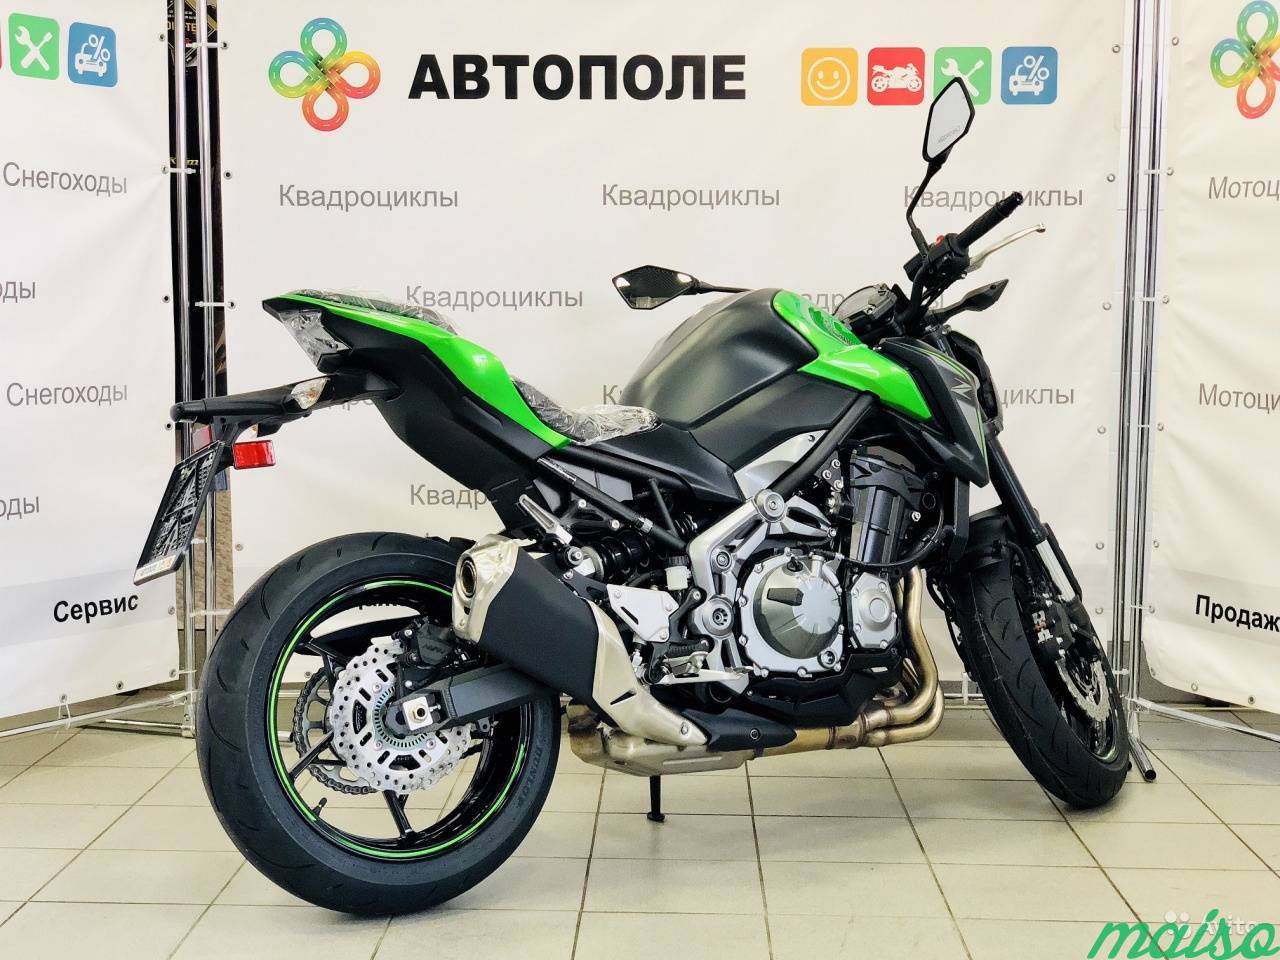 Мотоцикл Kawasaki Z900 2019 в Санкт-Петербурге. Фото 2